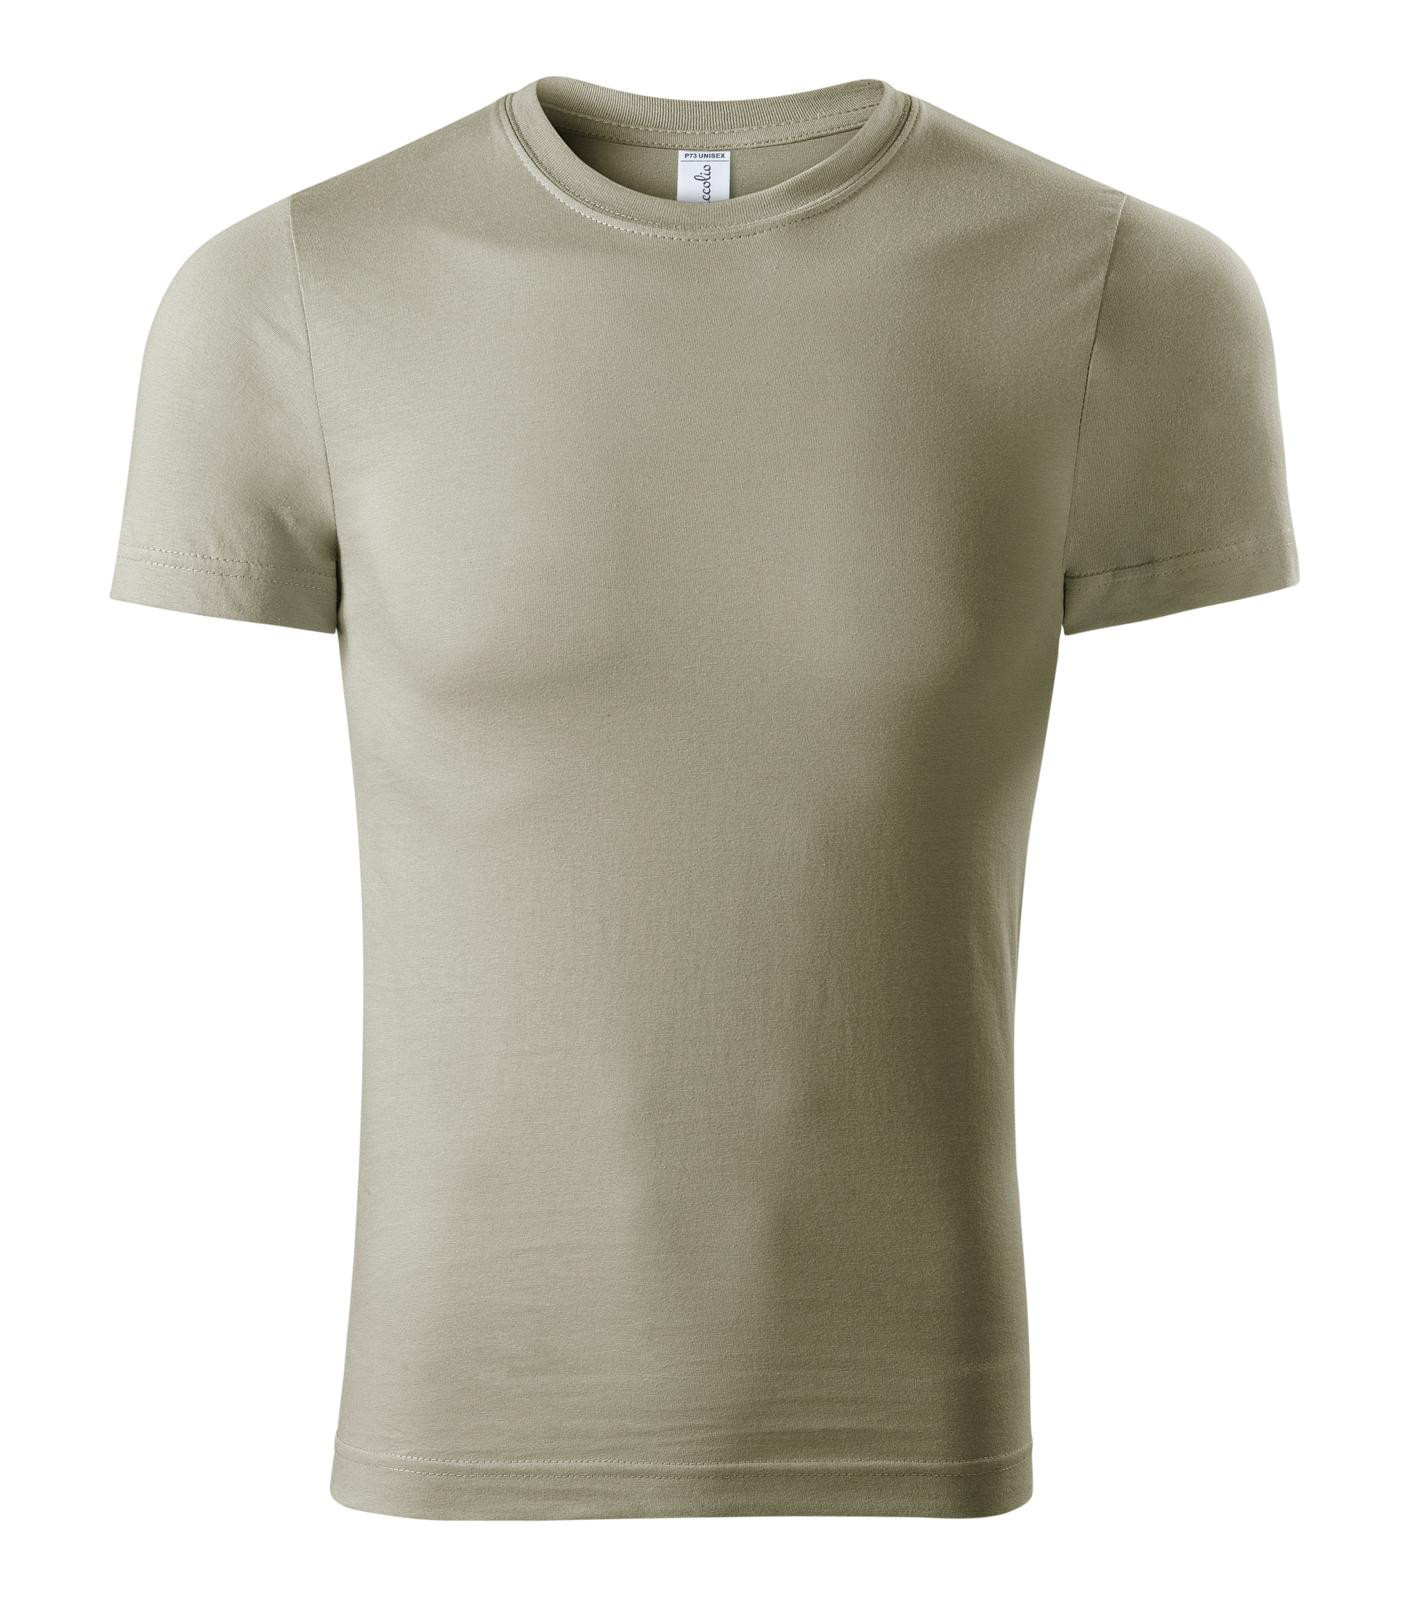 Unisex tričko Piccolio Paint P73 - veľkosť: XS, farba: khaki svetlá